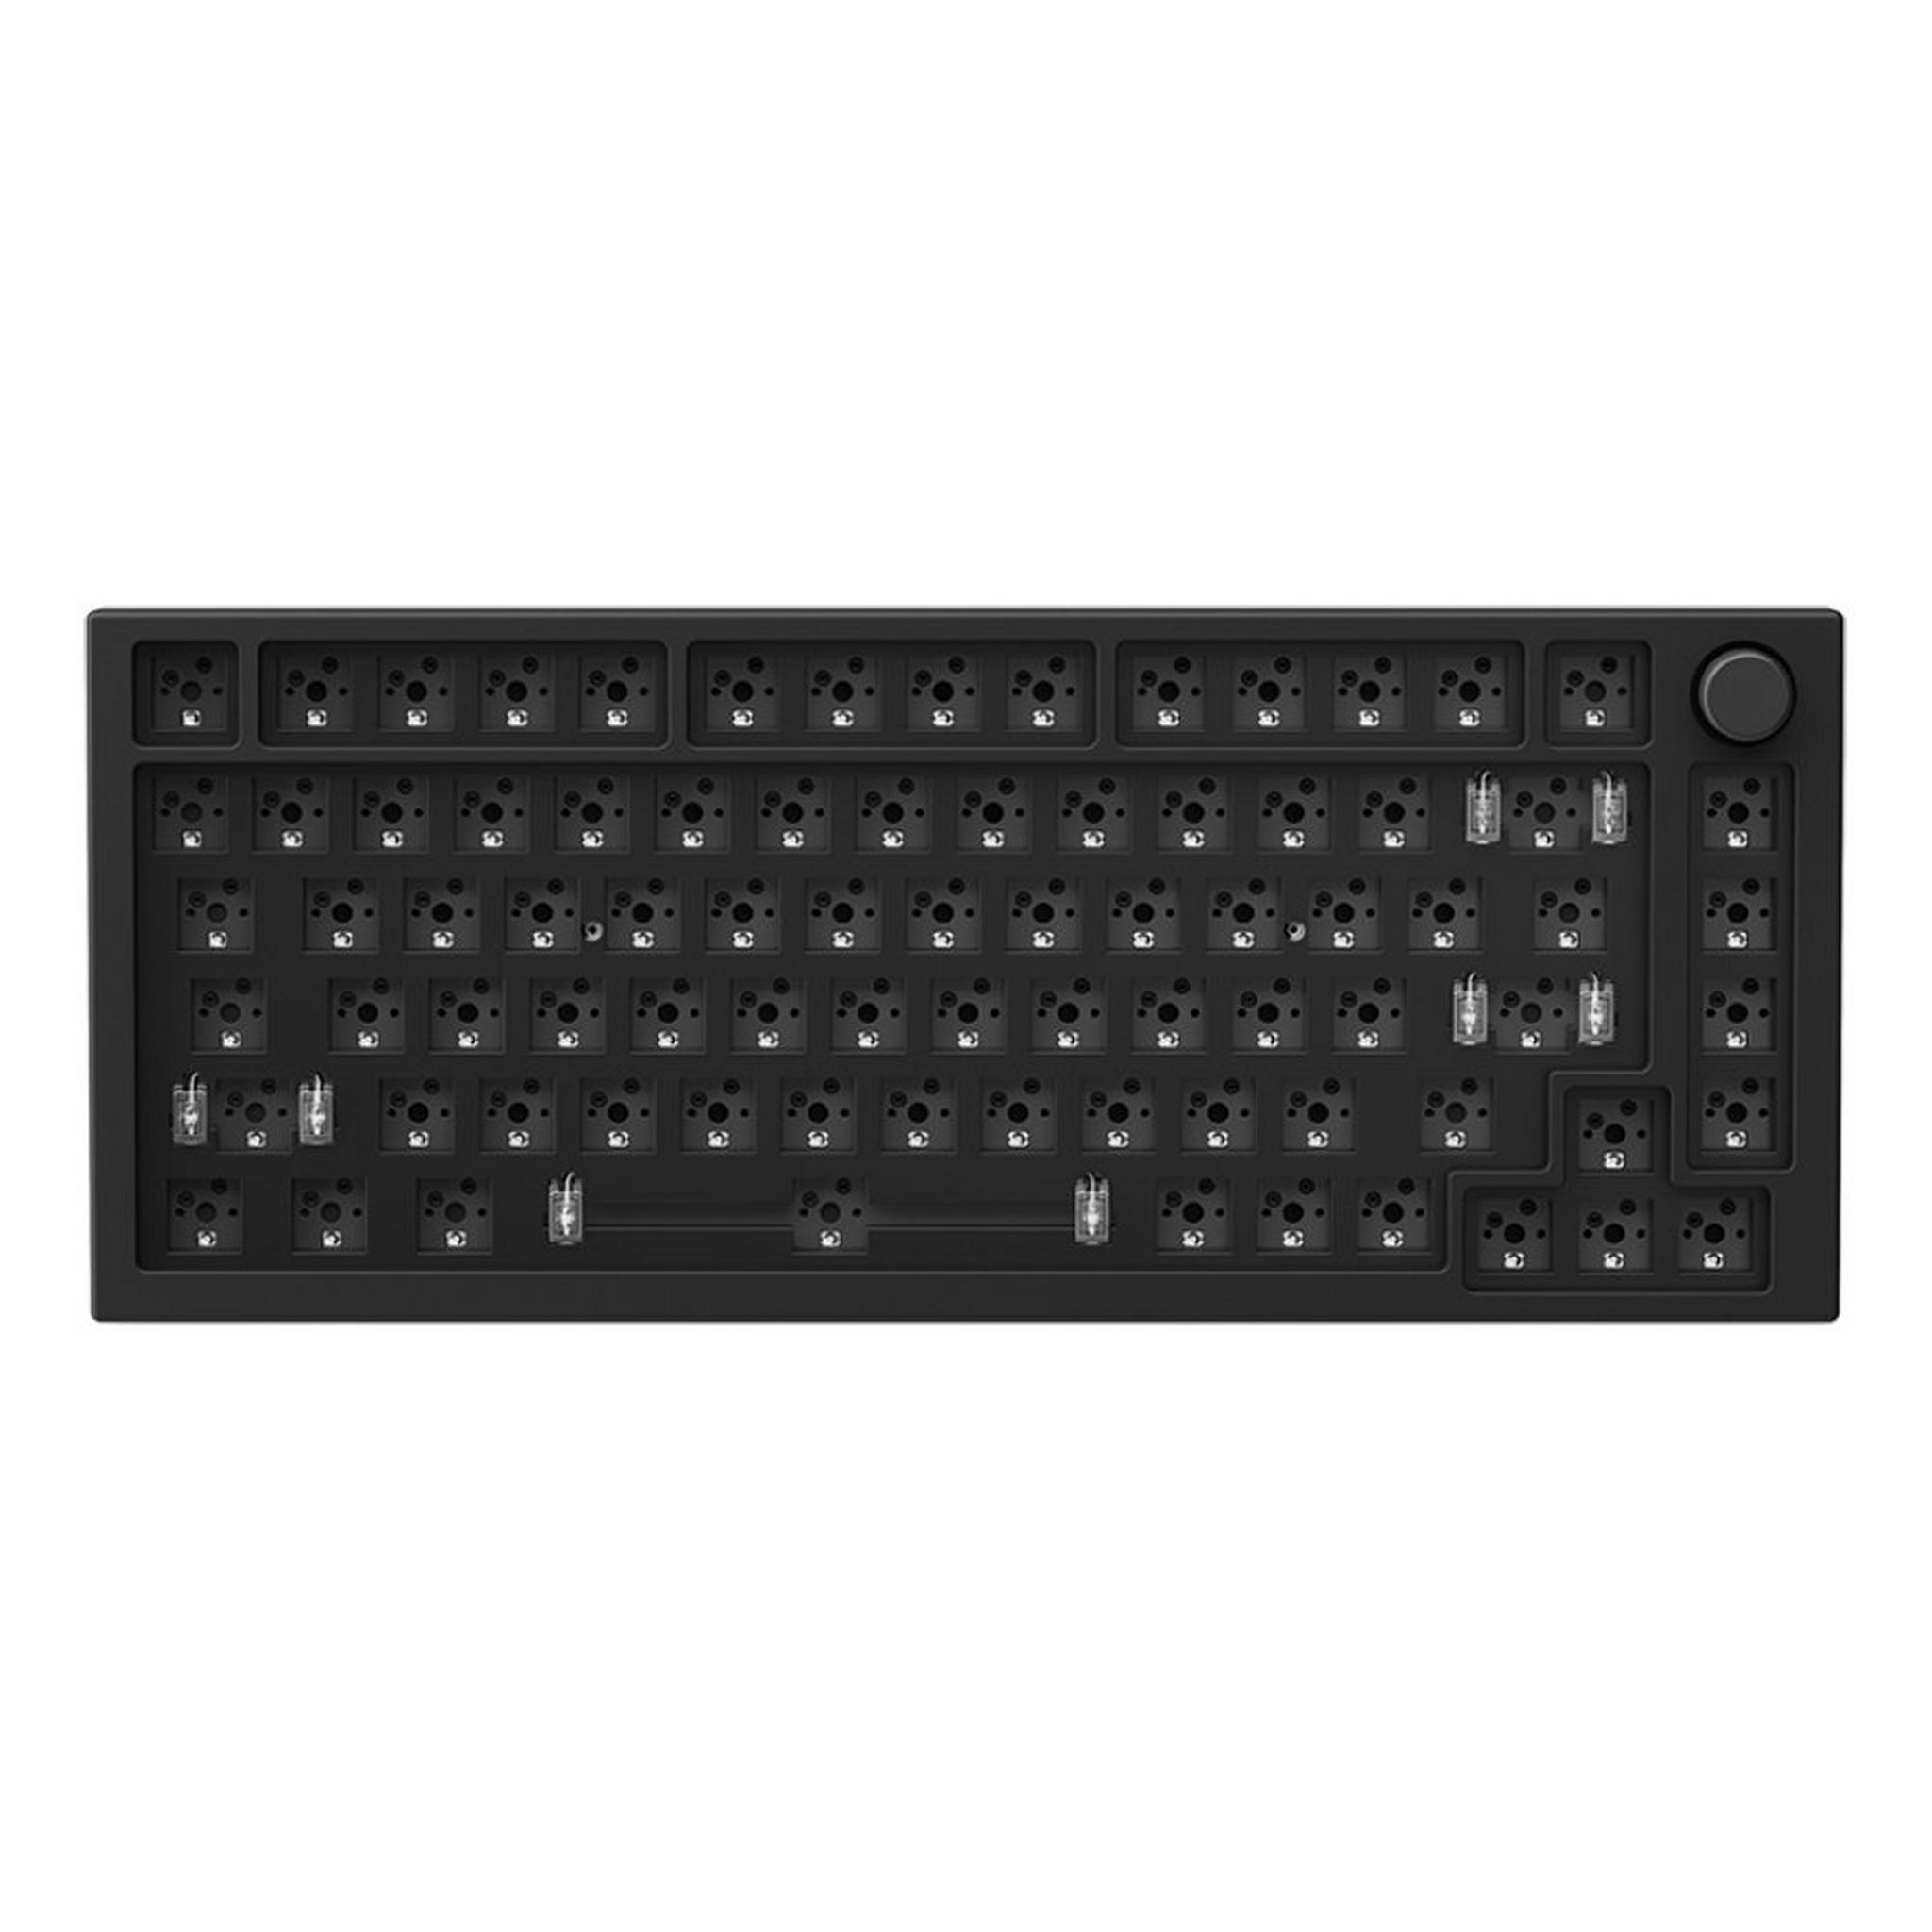 Glorious GMMK Pro 75% Barebone Keyboard Layout - Black